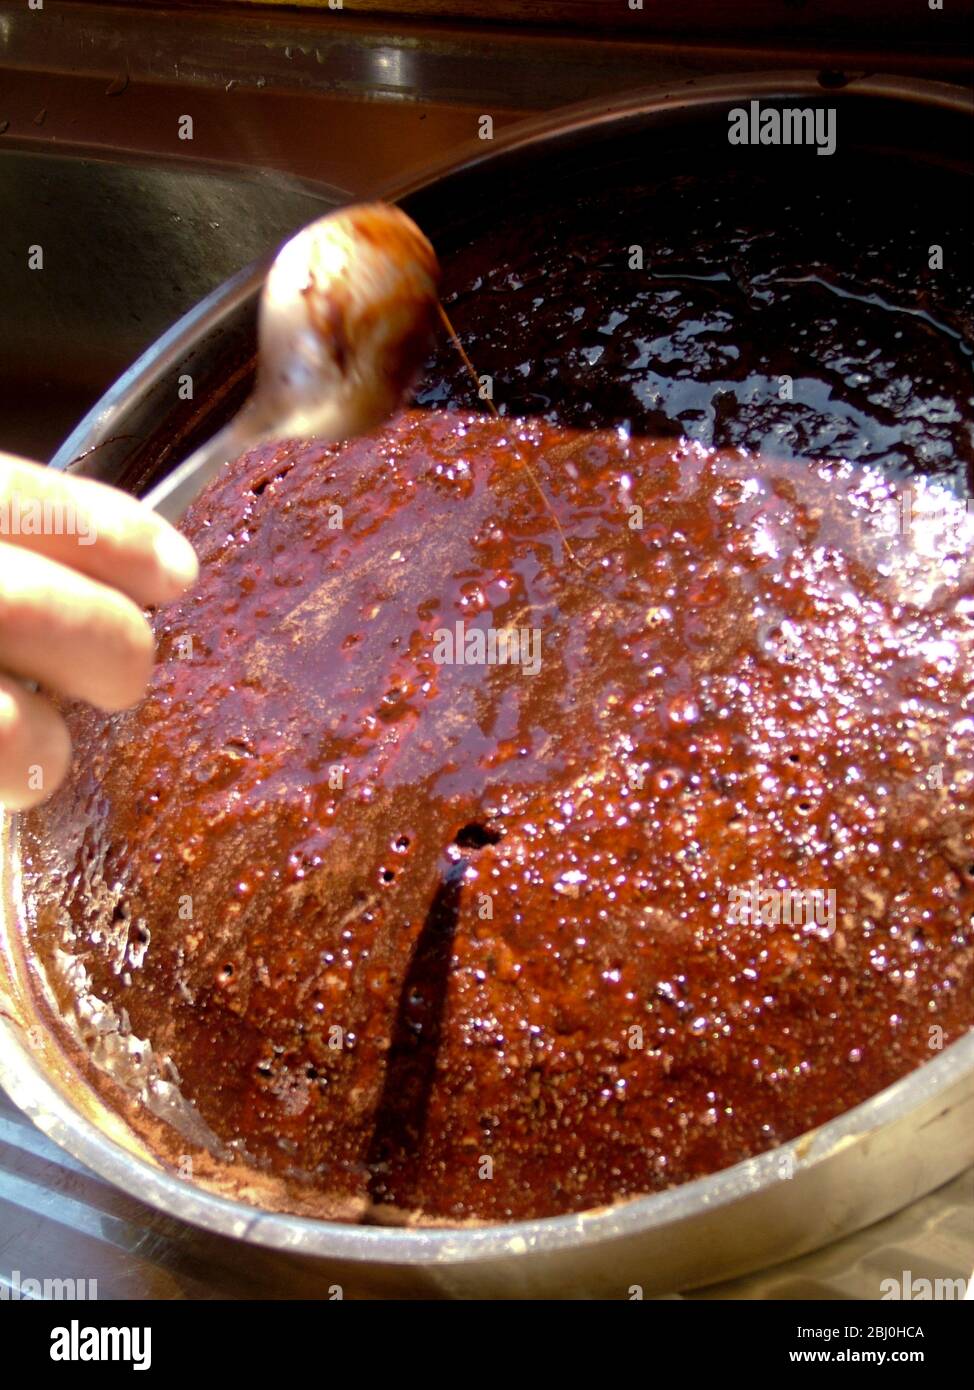 Ricca torta di cioccolato appiccicosa cotta a bordo del gulet Turco, con sciroppo di cioccolato per un'ulteriore goiness. - Foto Stock